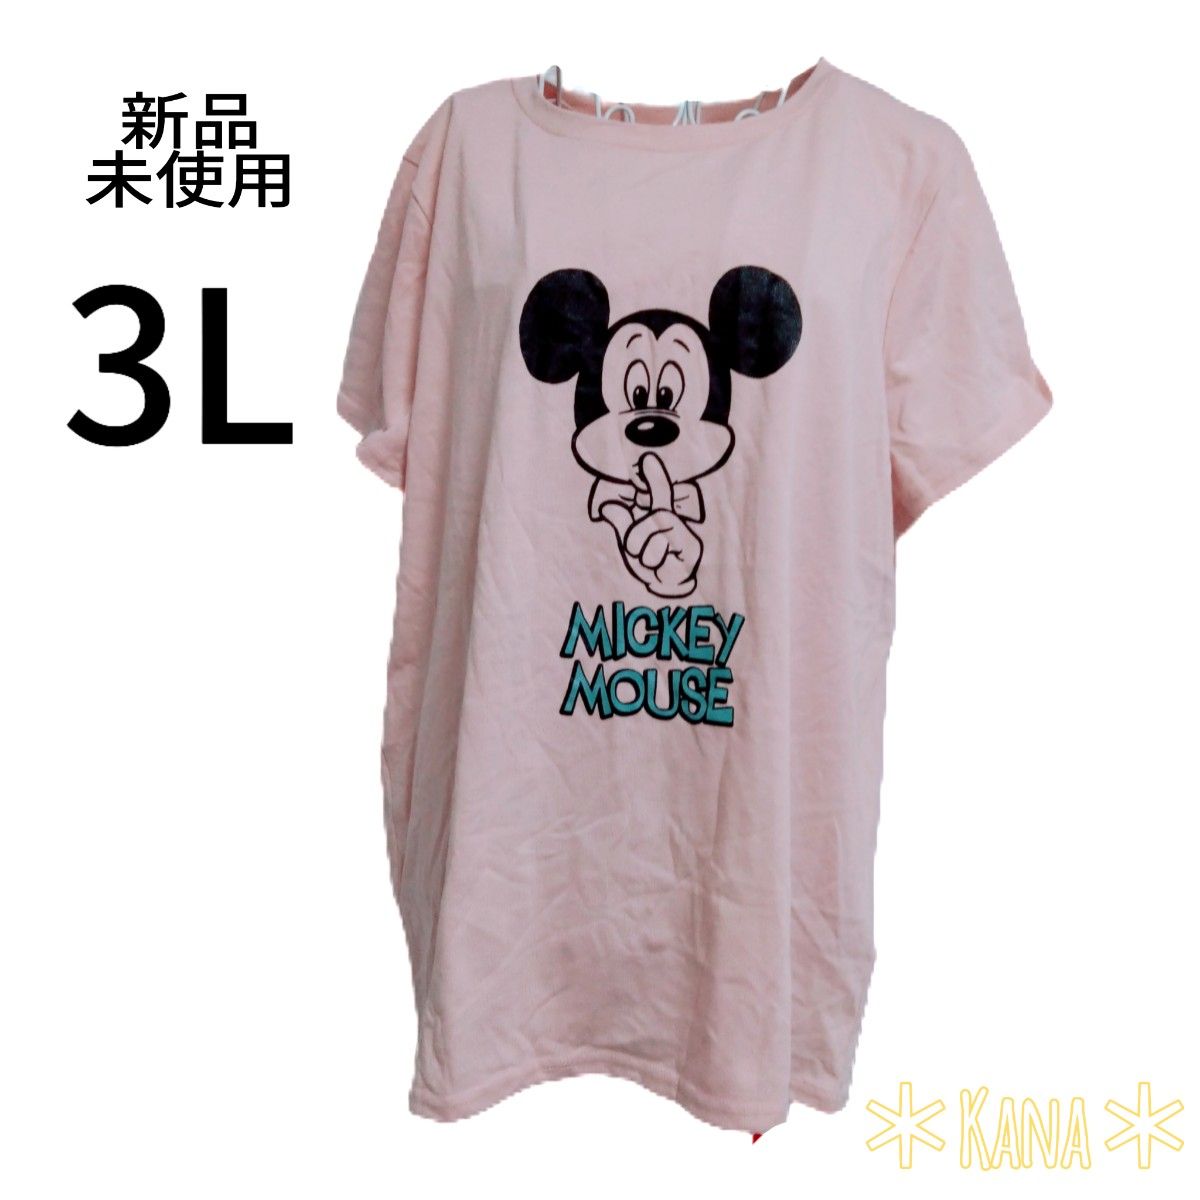 459 新品 レディース 大きいサイズ 3L 半袖 ミッキー ディズニー ピンク Tシャツ   